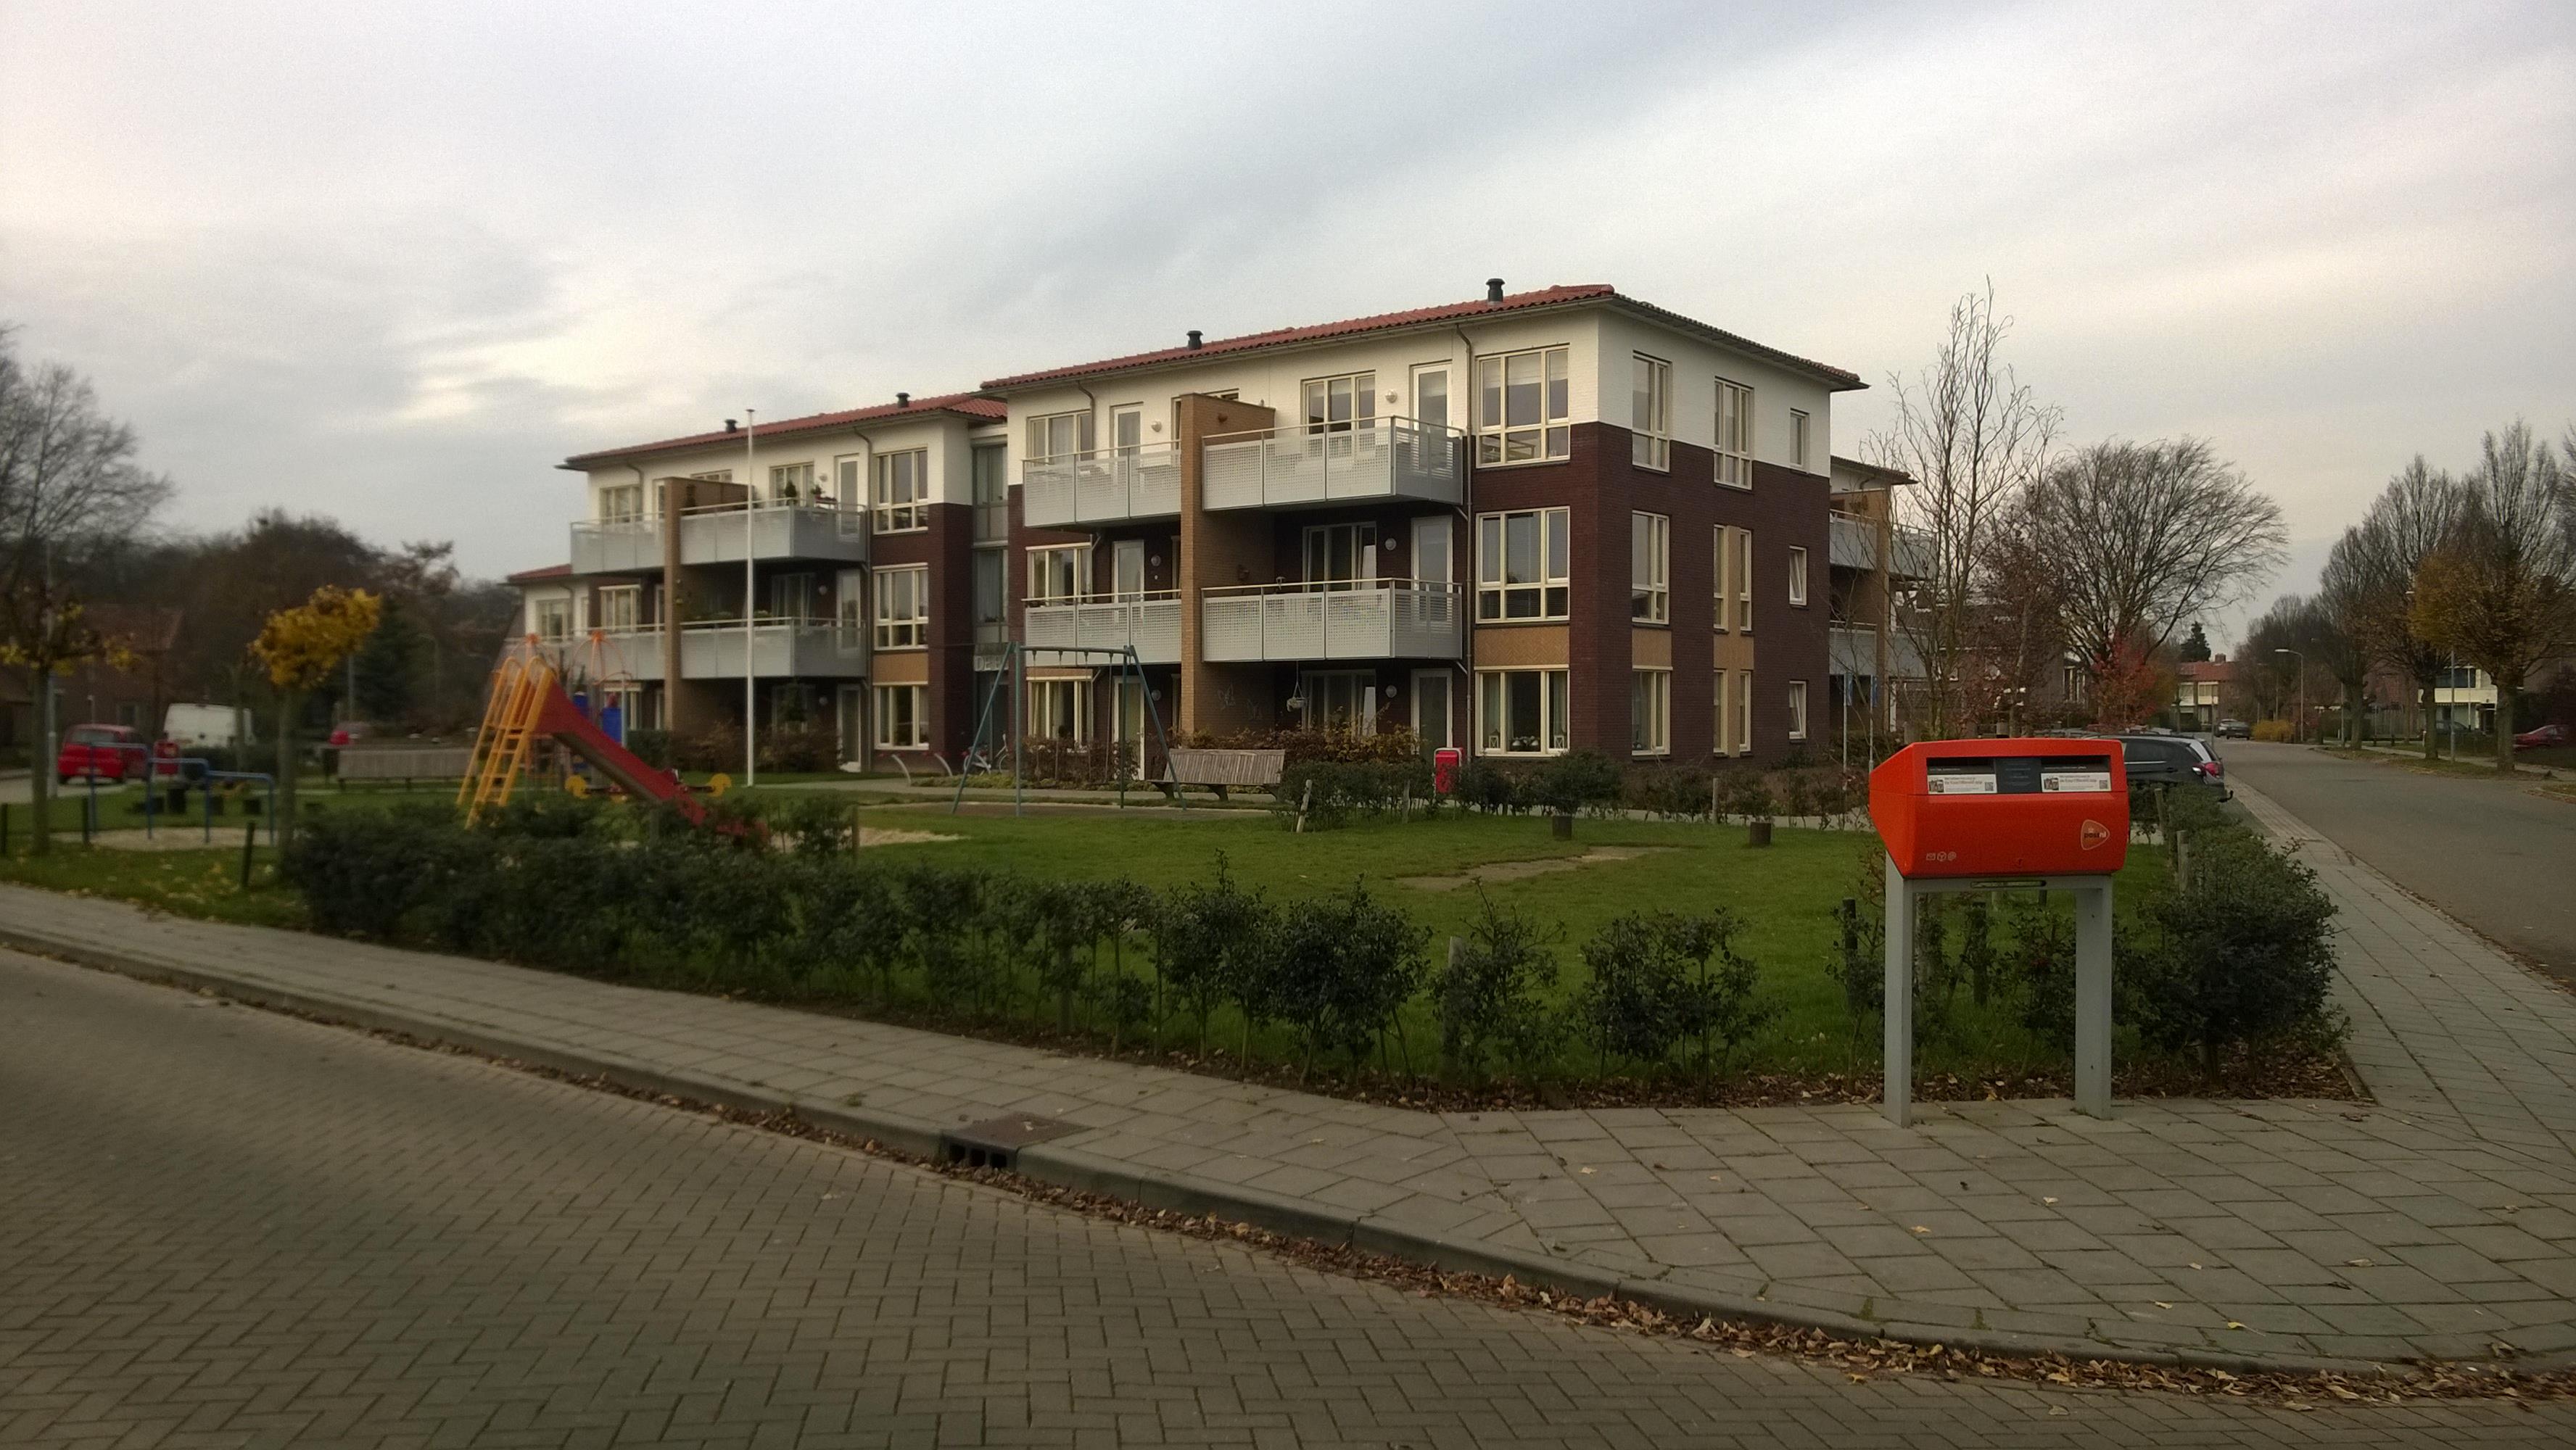 Armgardstraat 31, 6981 HR Doesburg, Nederland